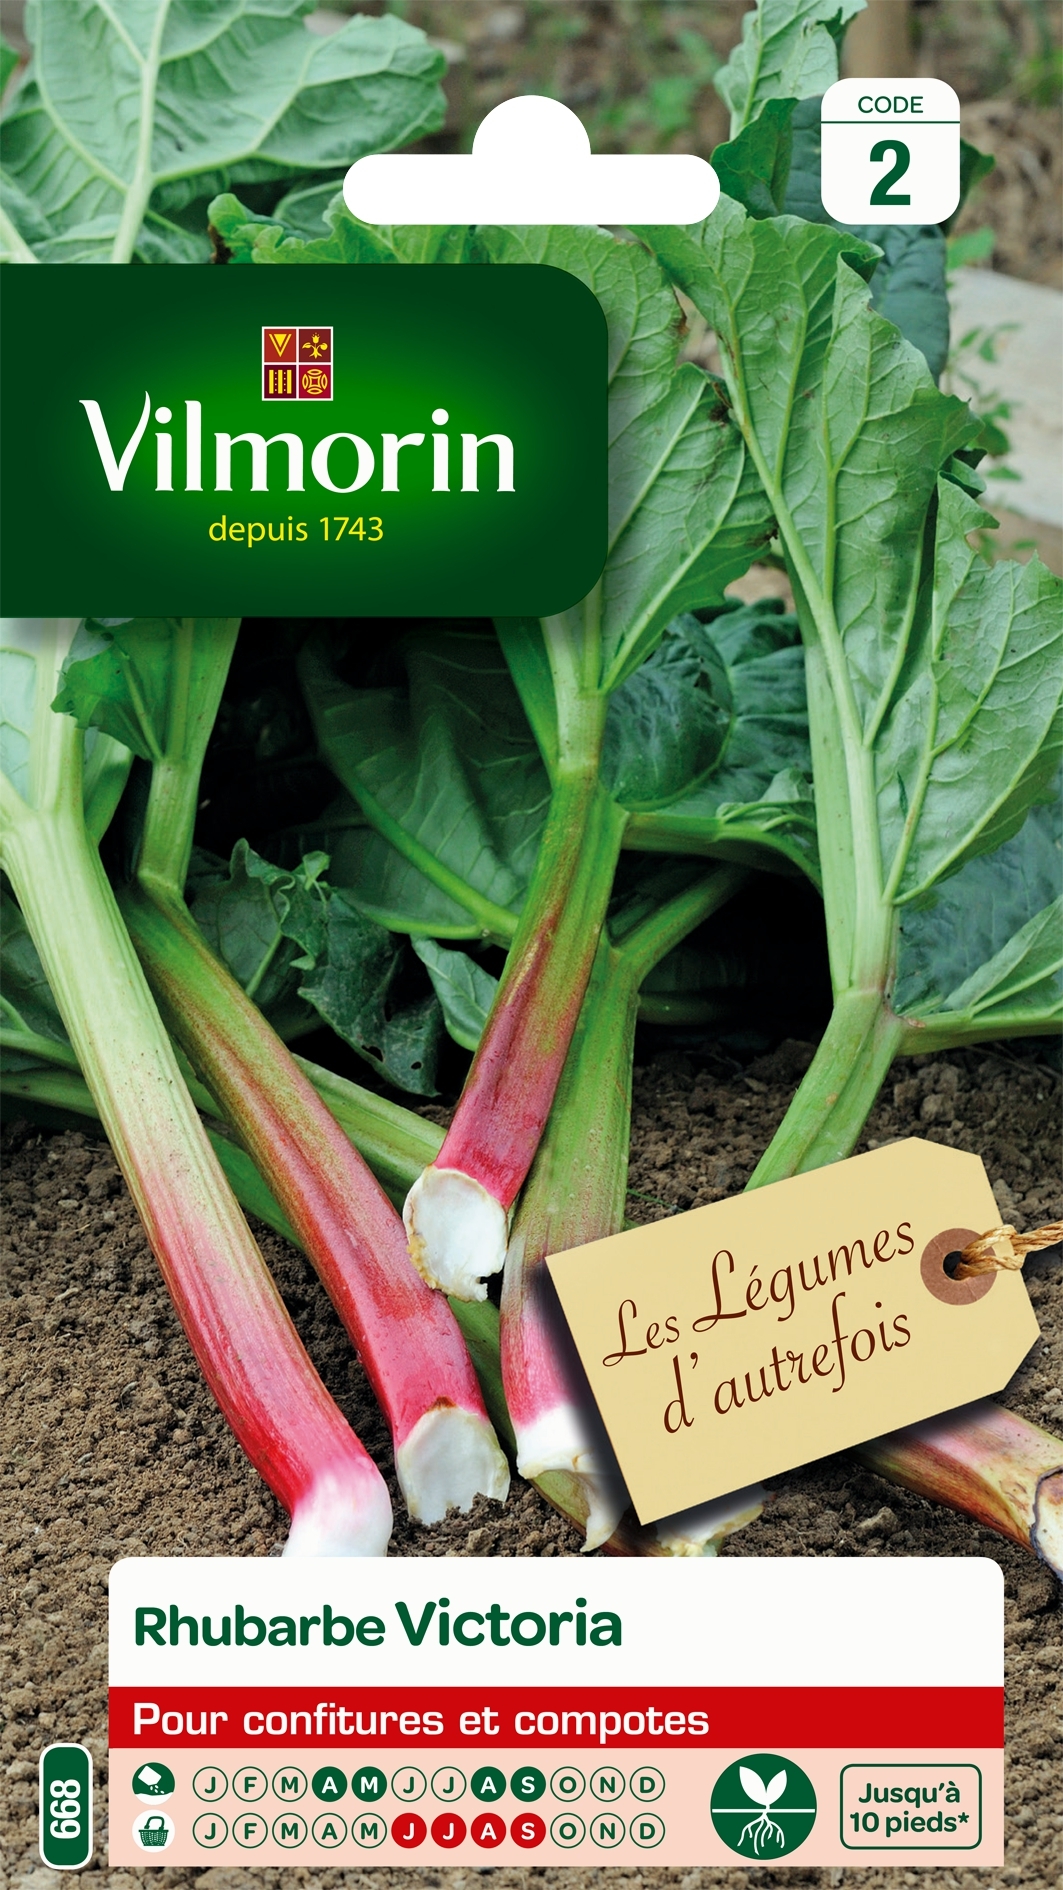 Rhubarbe Victoria - Vilmorin